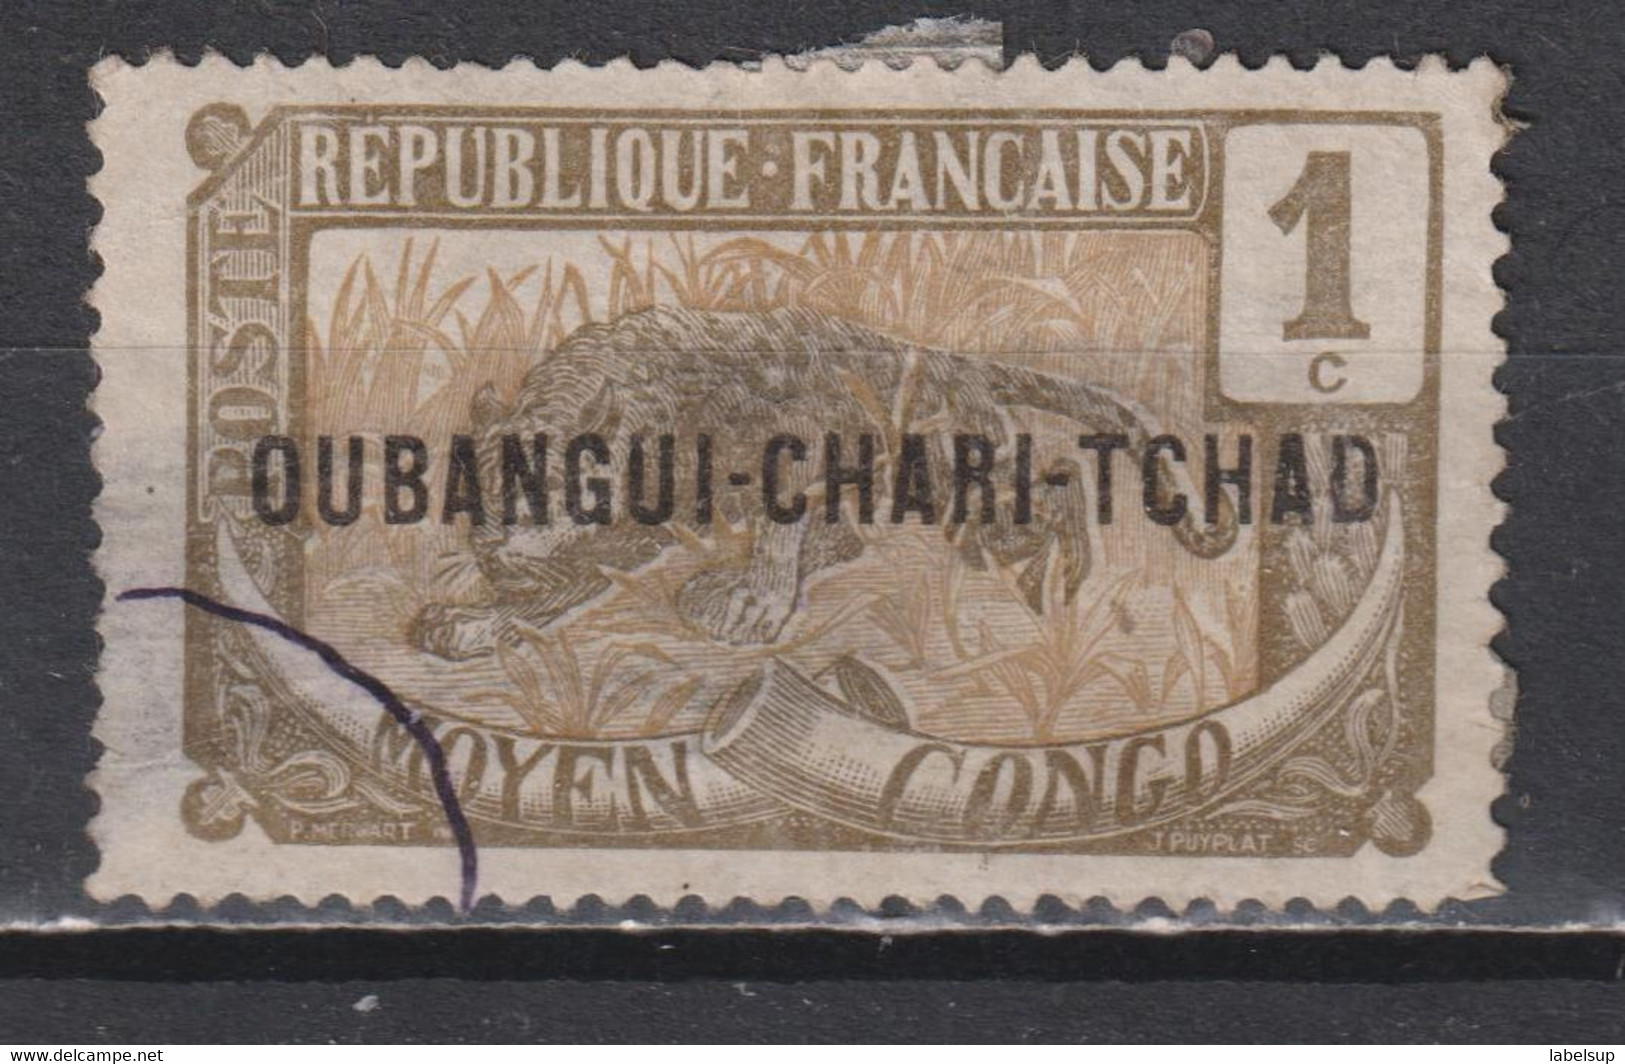 Timbre Oblitéré D'Oubangui Chari Tchad De 1915 N°1 - Used Stamps